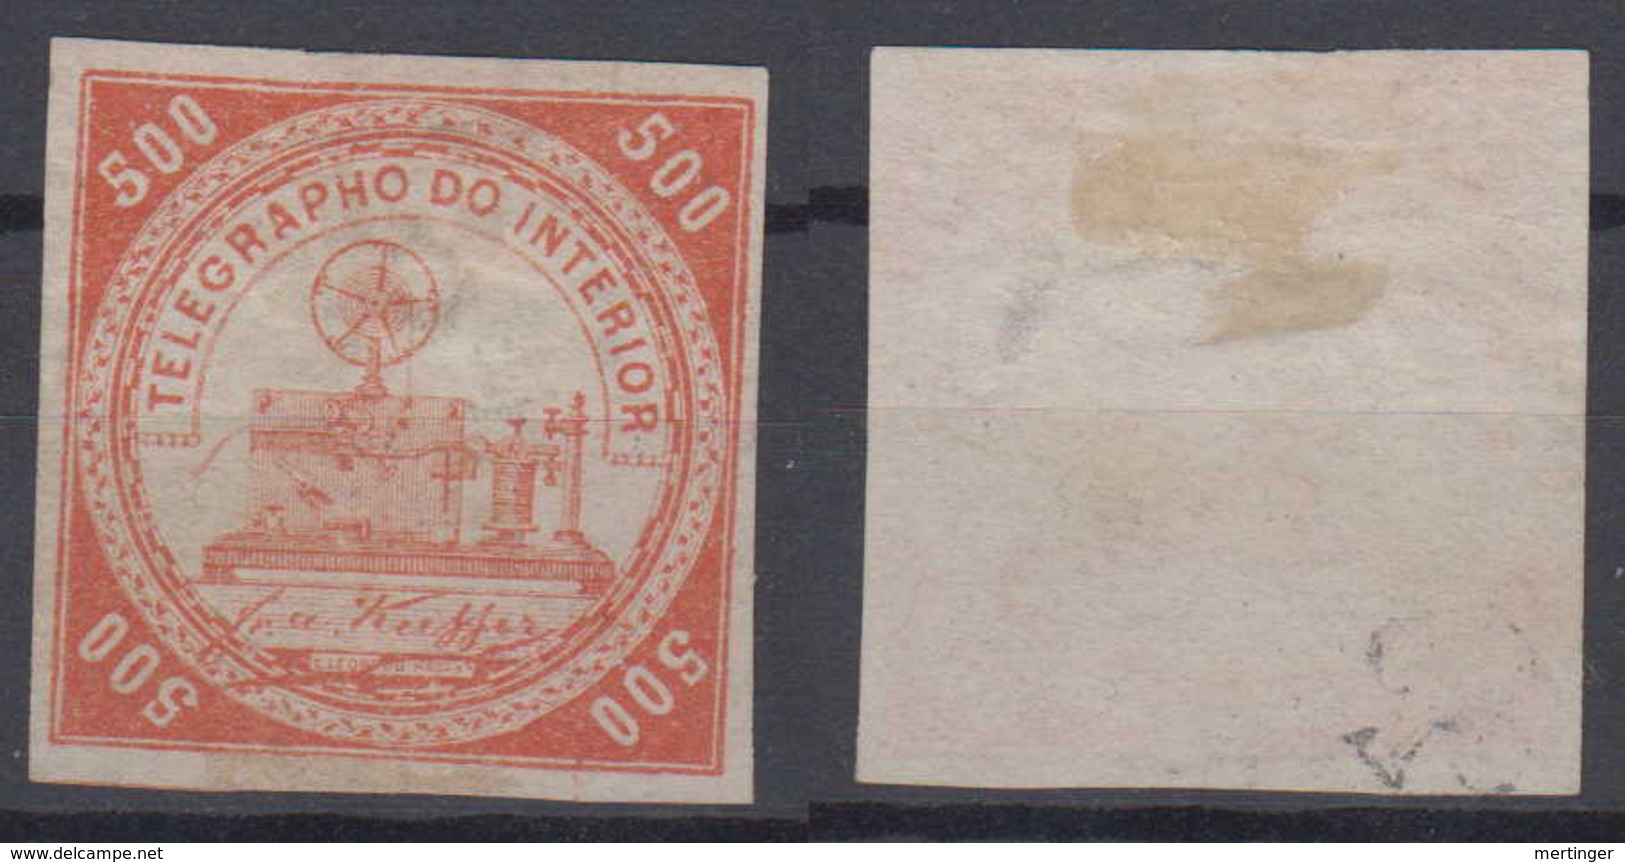 Brazil Brasil Telegrafo Telegraph 1869 500R (*) Mint Kiefer - Telegraphenmarken